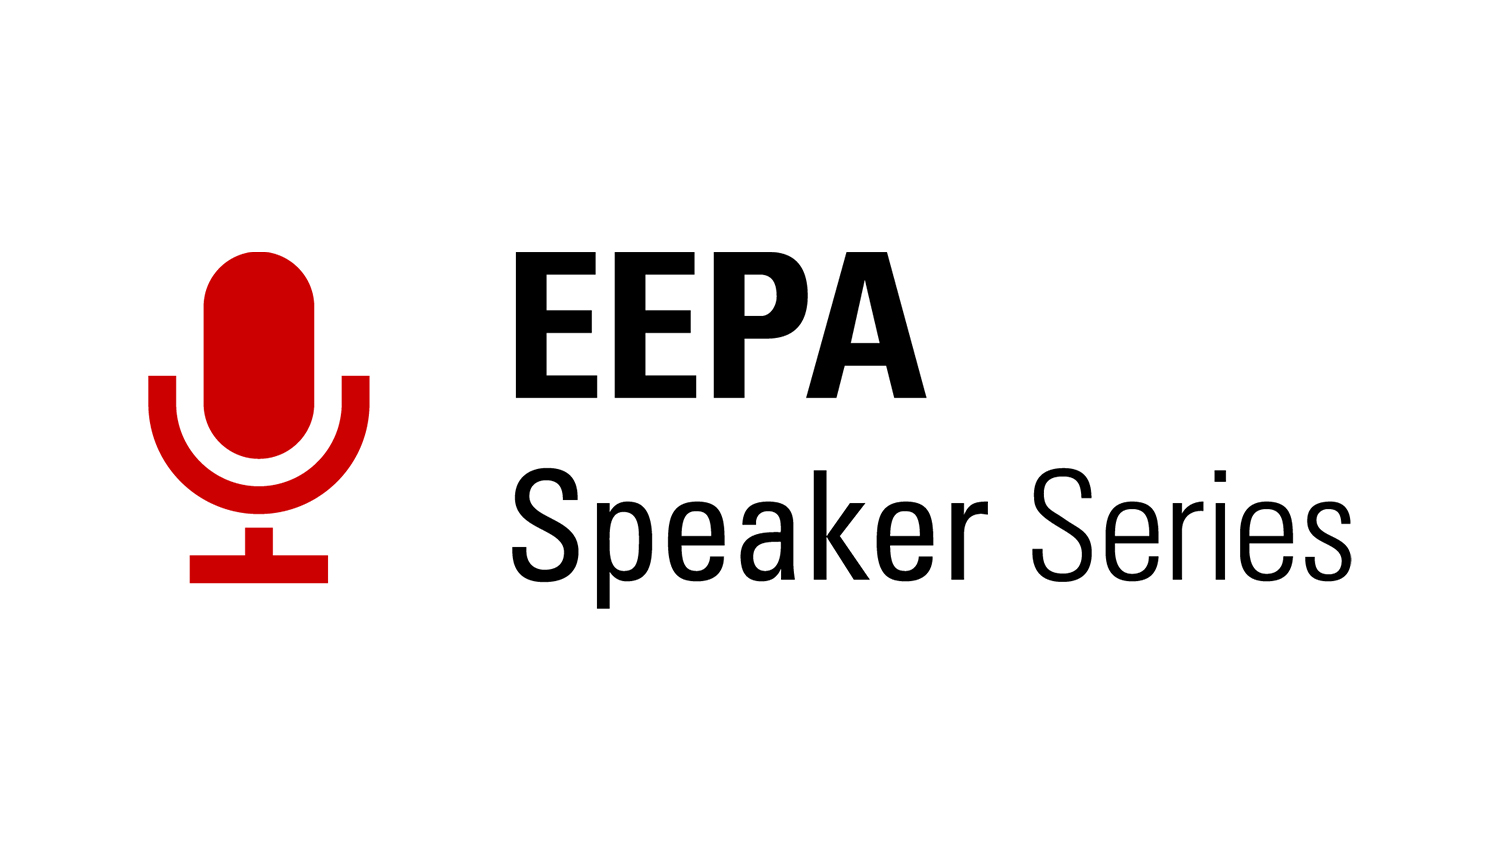 EEPA Speaker Series